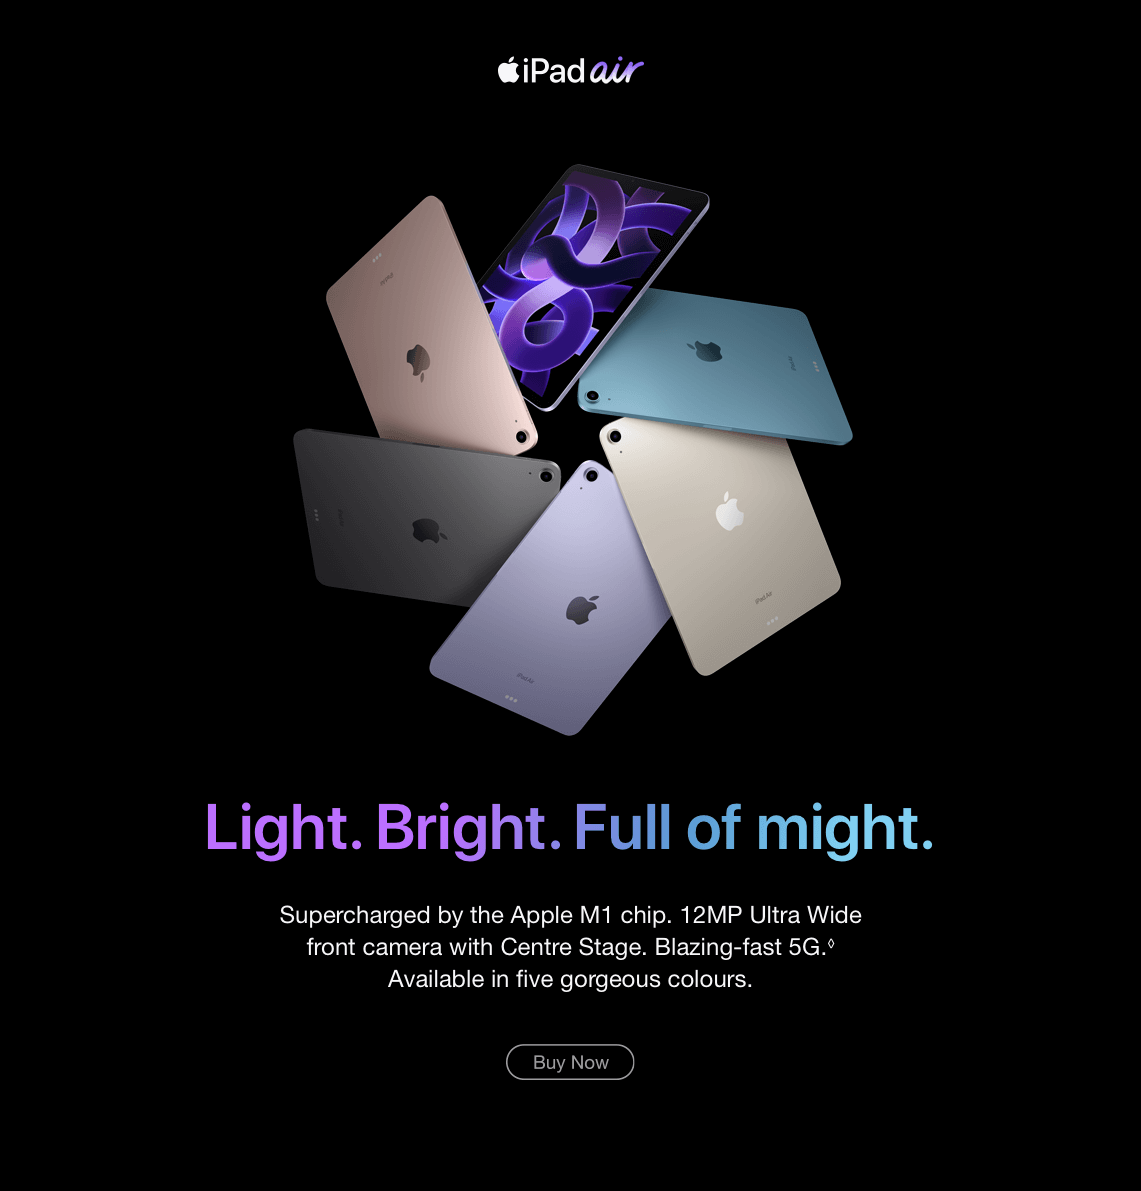 Light. Bright. Full of might.